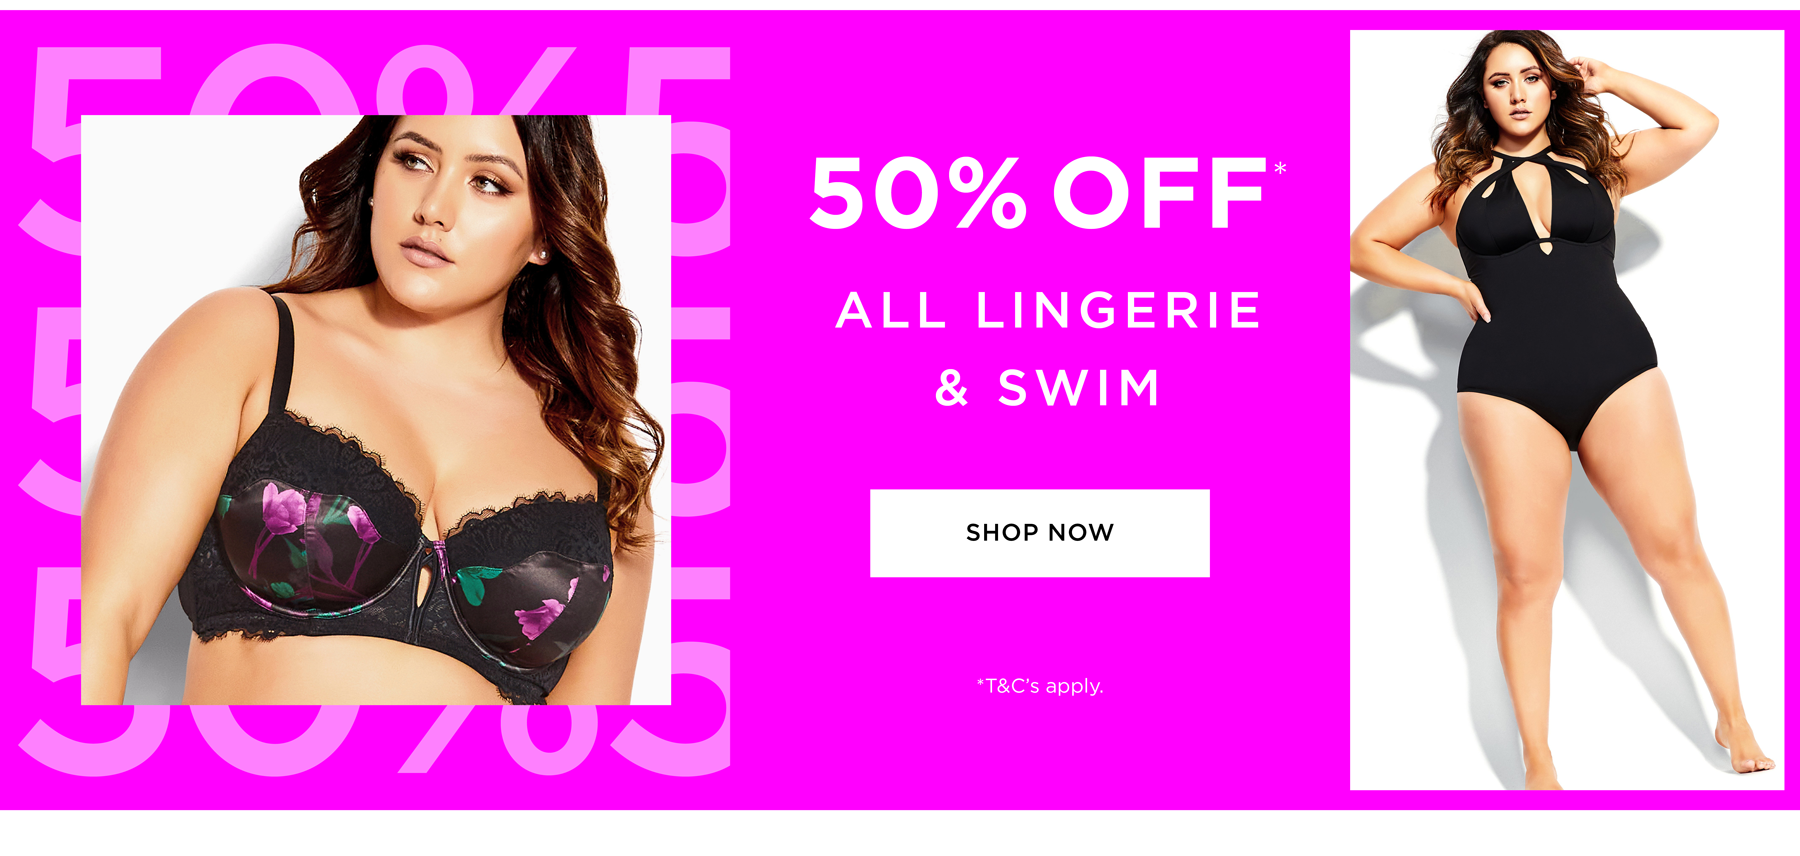 Flash sale 50% OFF on lingerie & swimwear